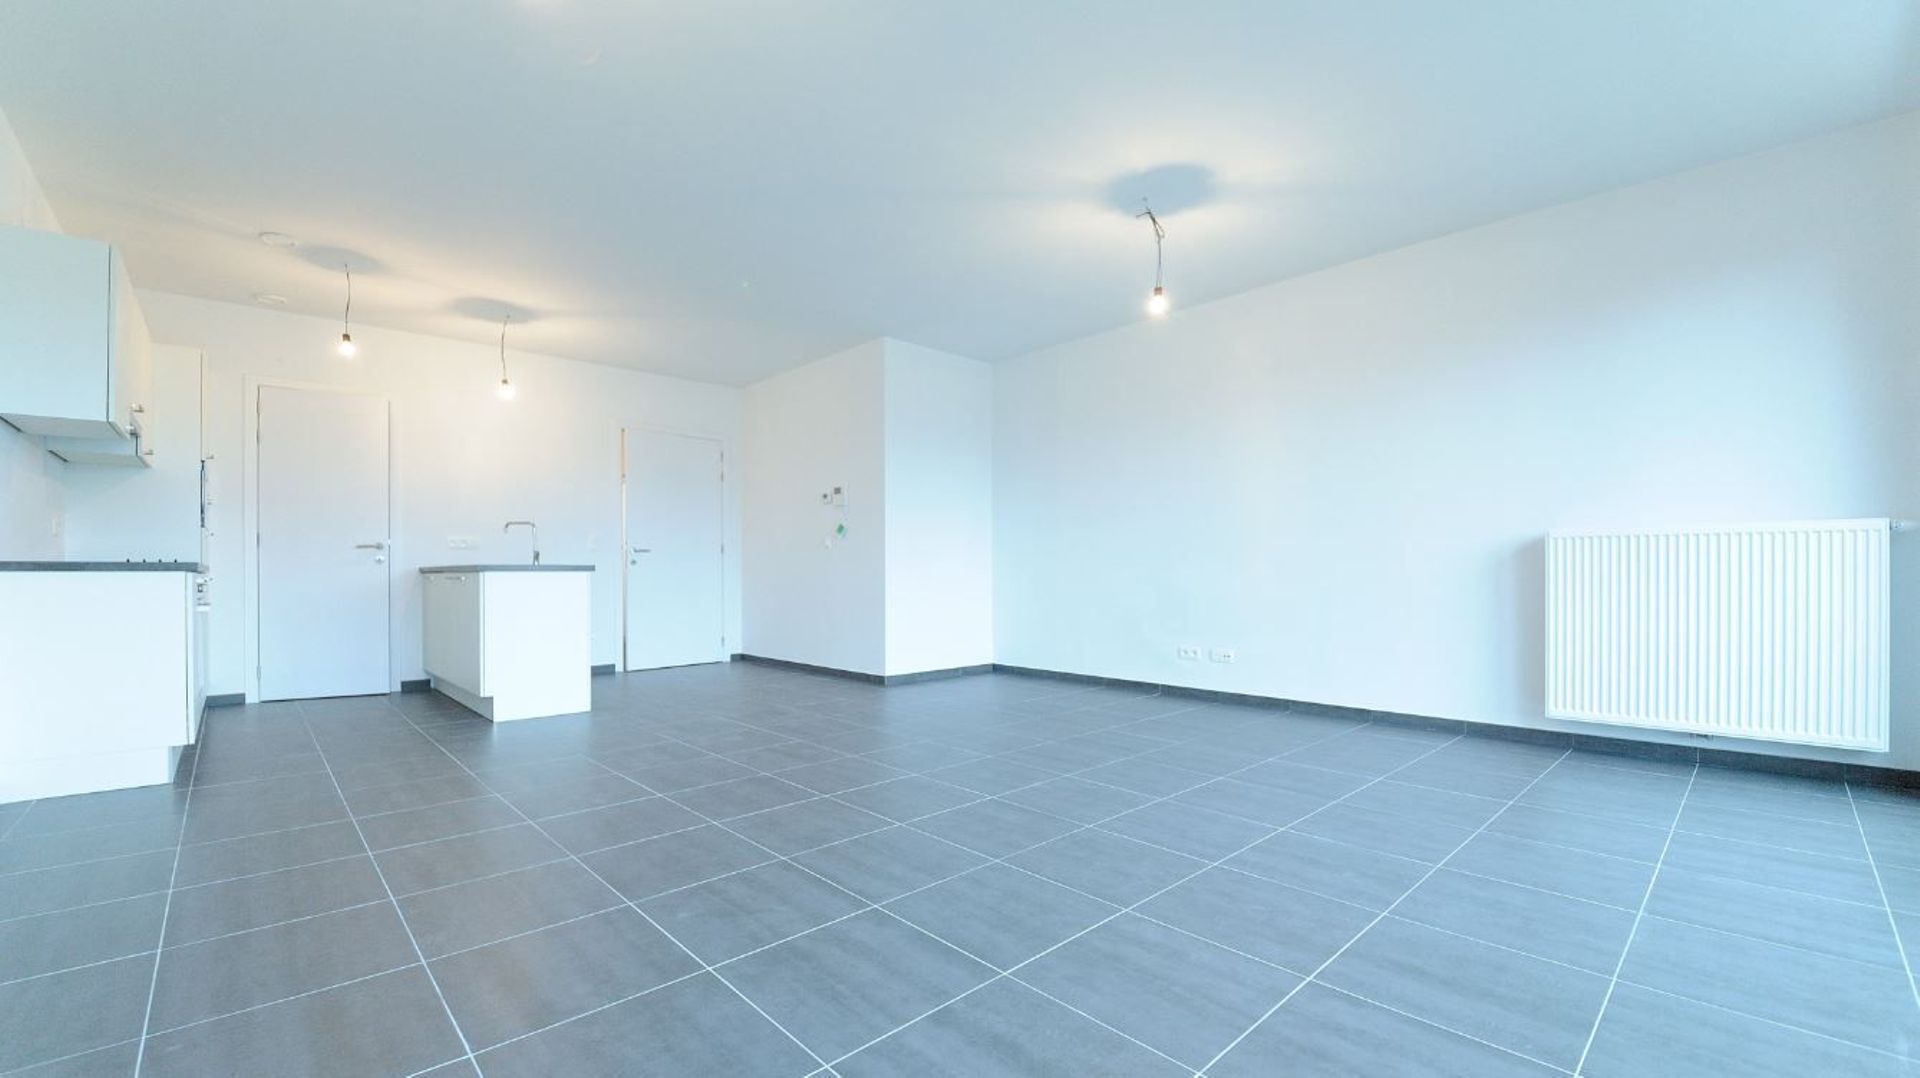 Les appartements proposés sont assez grands (100 m² en moyenne) et construits avec des matériaux de qualité.